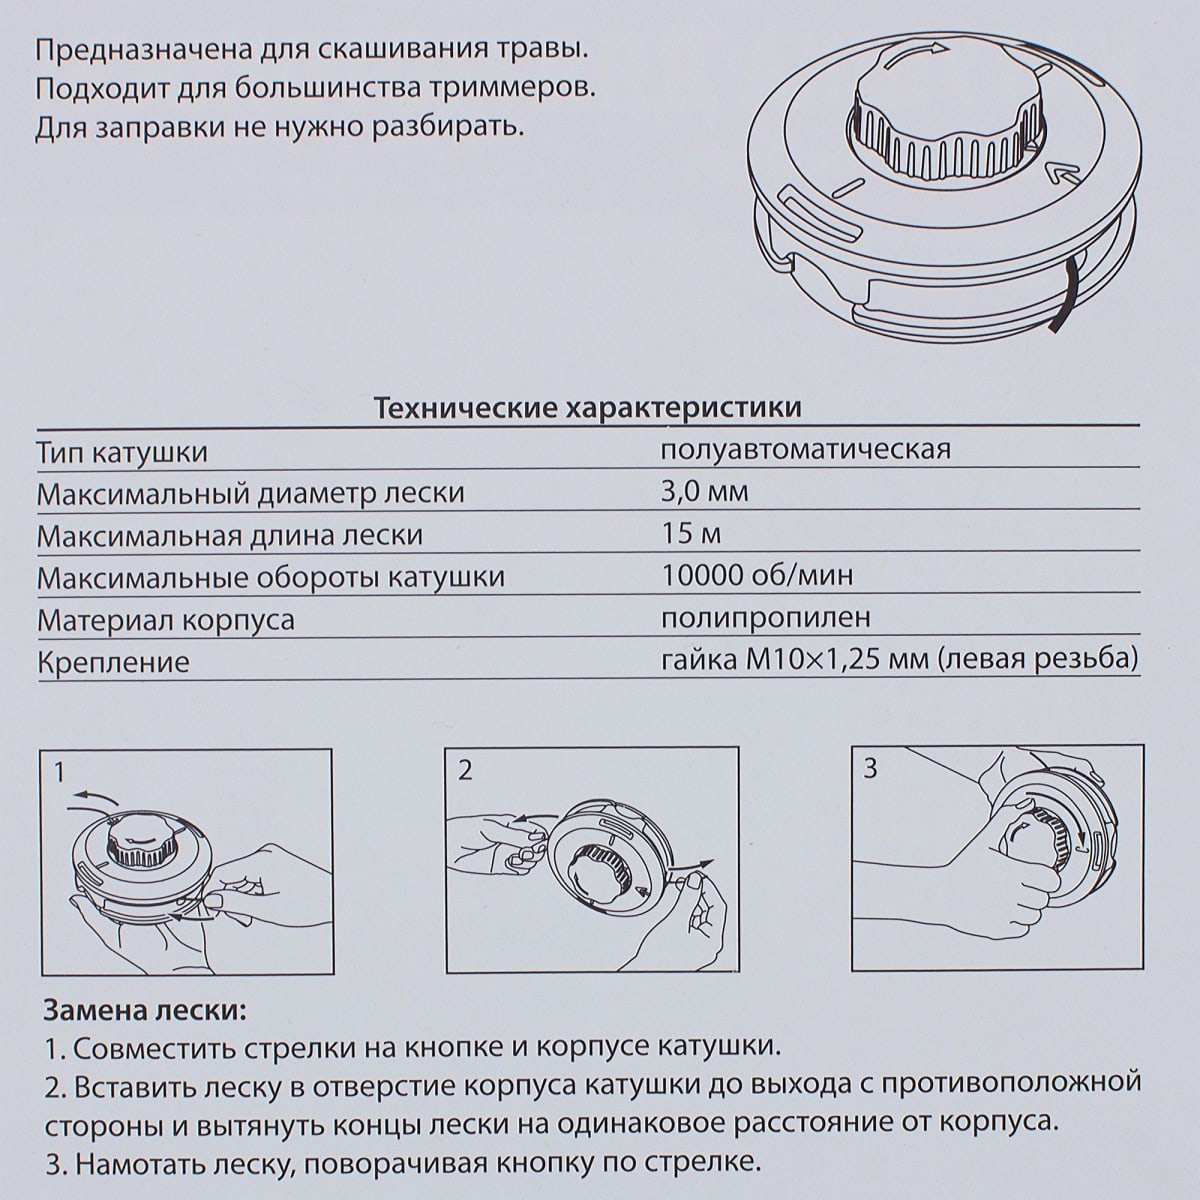 ✅ косилка штиль фс-38 и 55 (stihl fs) - инструкция по эксплуатации, ремонт своими руками, как снять катушку с триммера и завести бензокосу - tractoramtz.ru